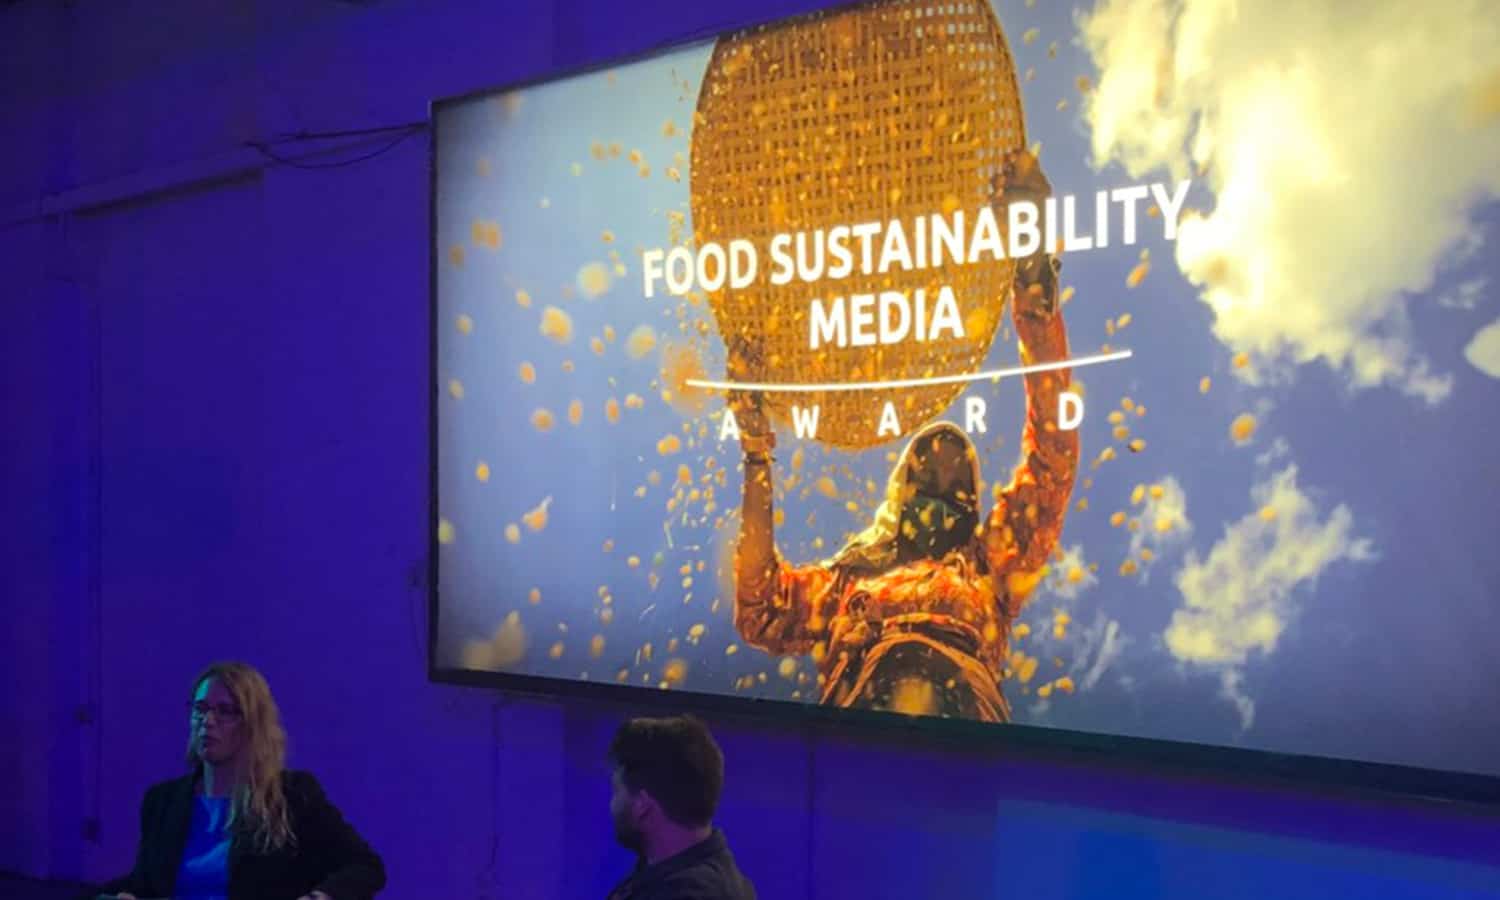 庆祝食品可持续性媒体奖的庆祝活动使人们关注的食物故事不仅味道很好，而且通过为更可持续的食品体系做出贡献，对社会和植物有益。